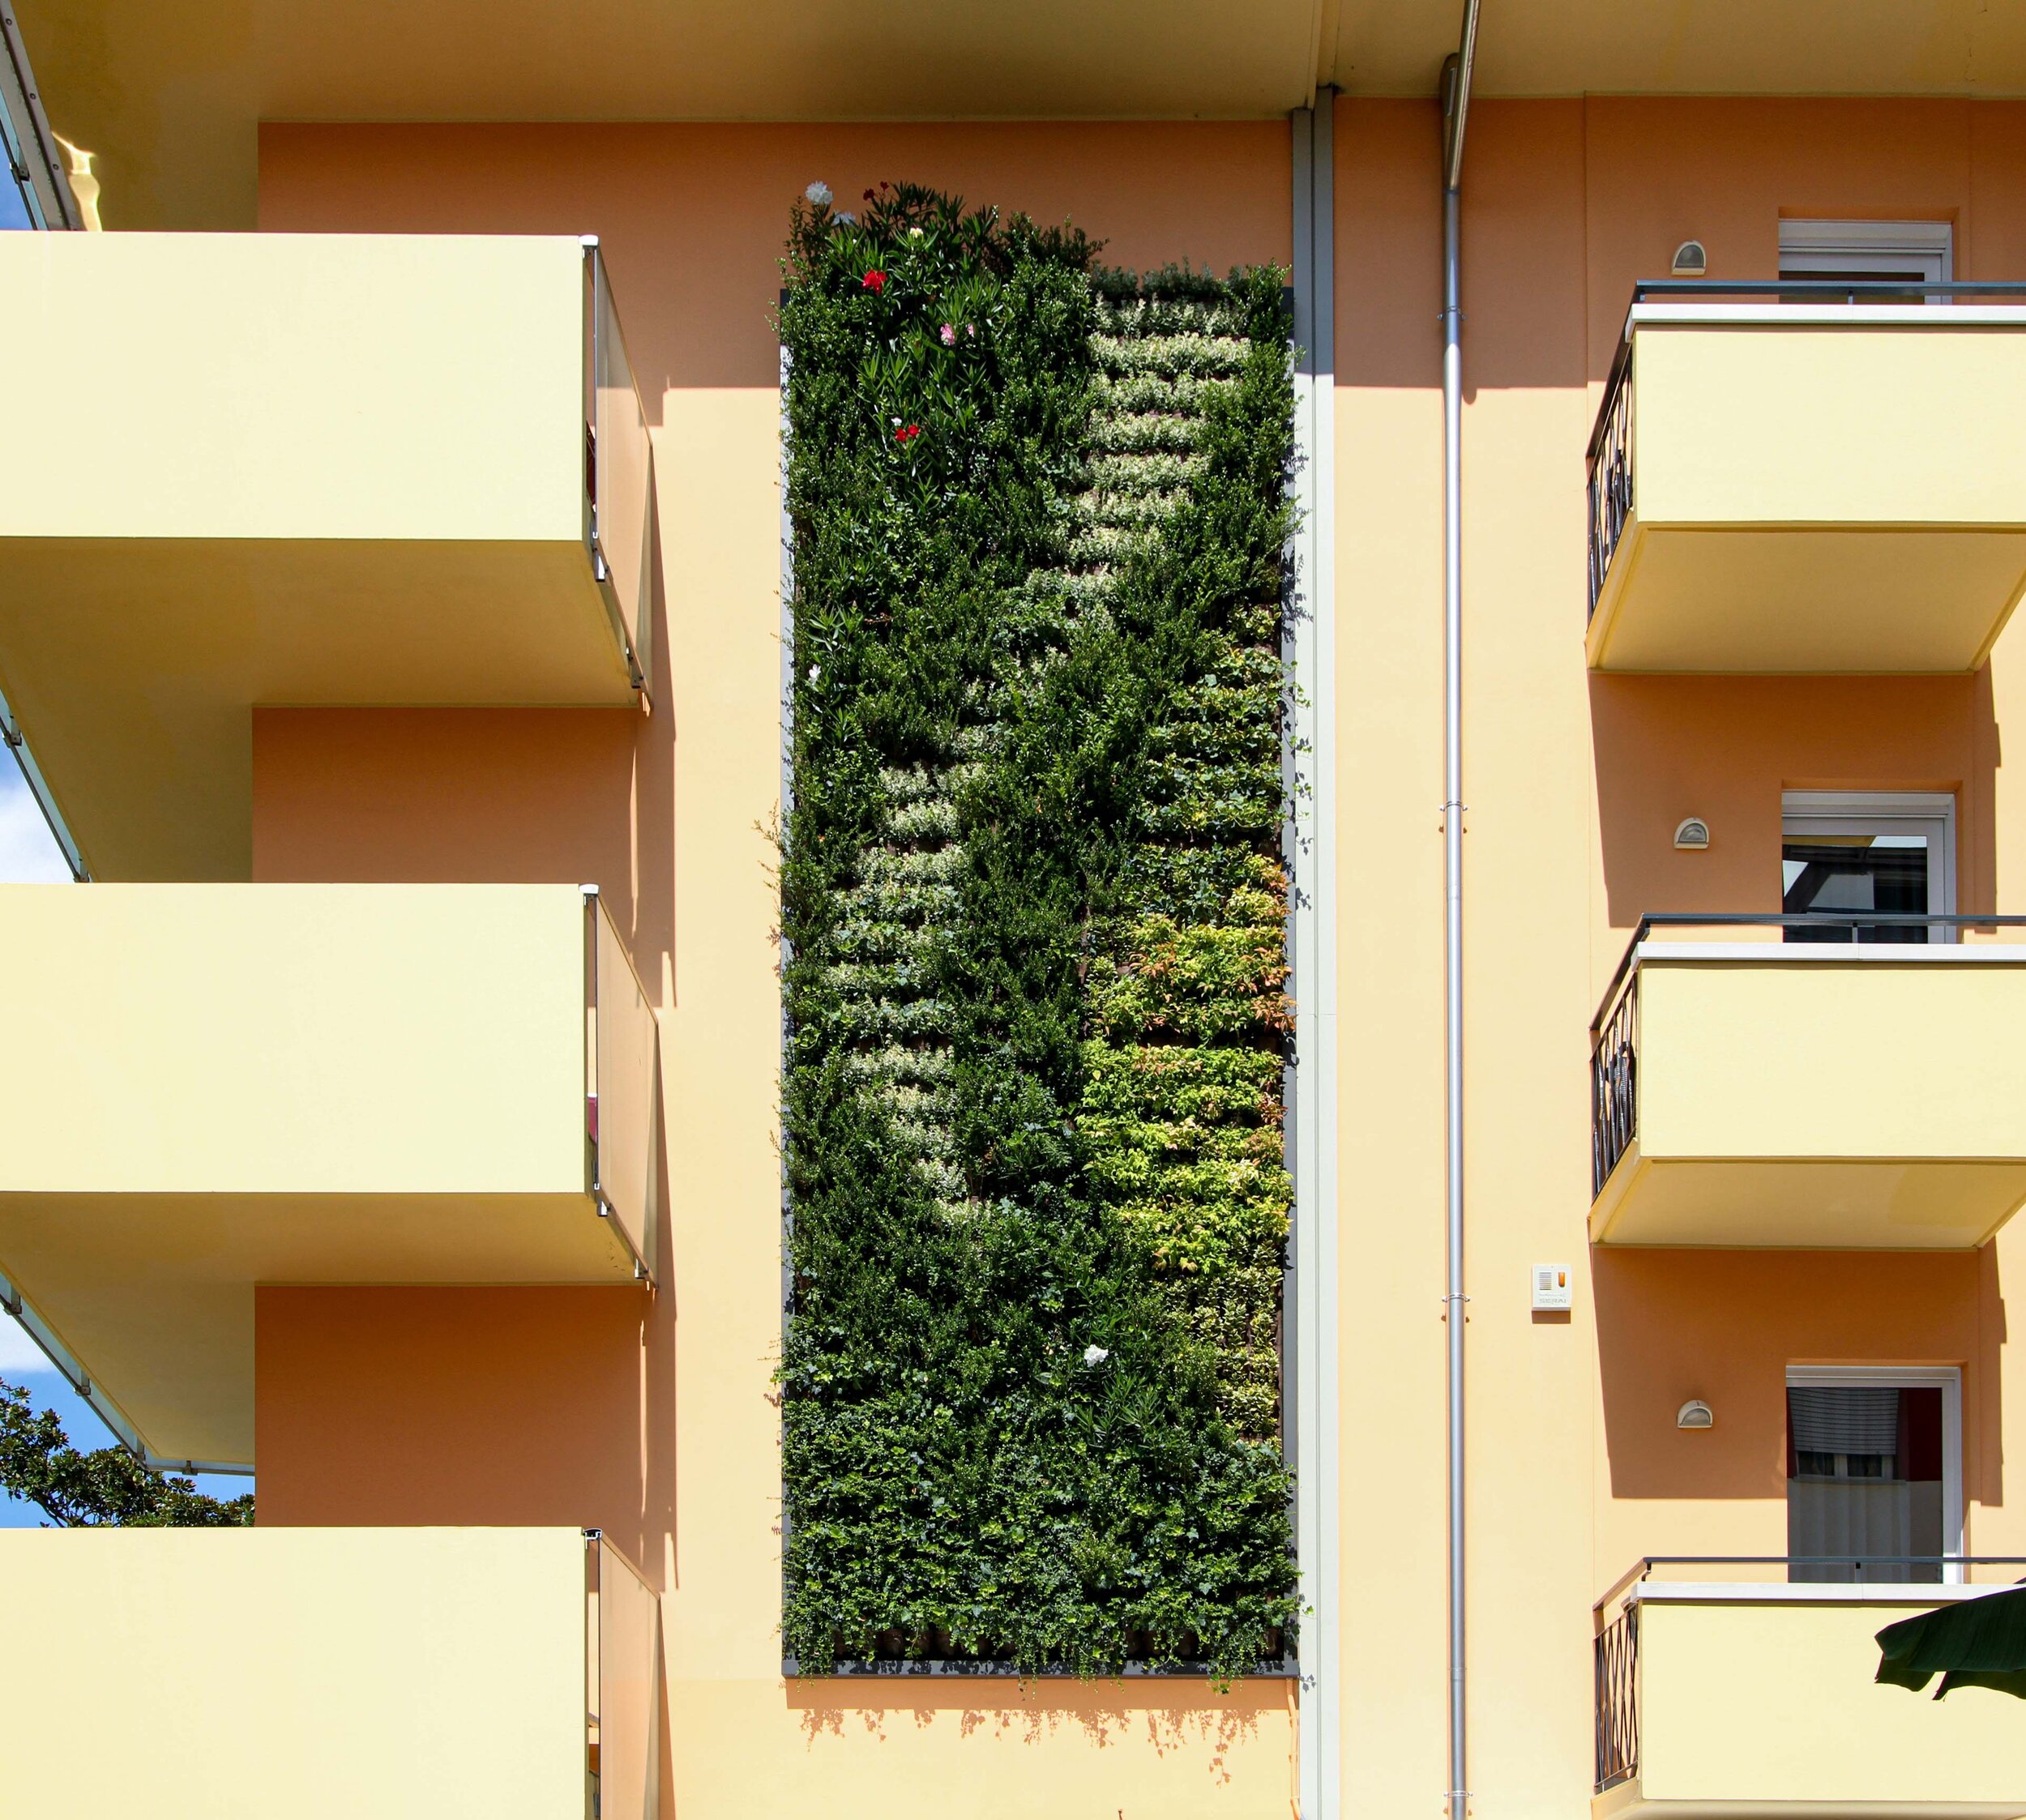 daniele-hotel-garten-vertikale-wand-grün-sundar-italia-003.jpg